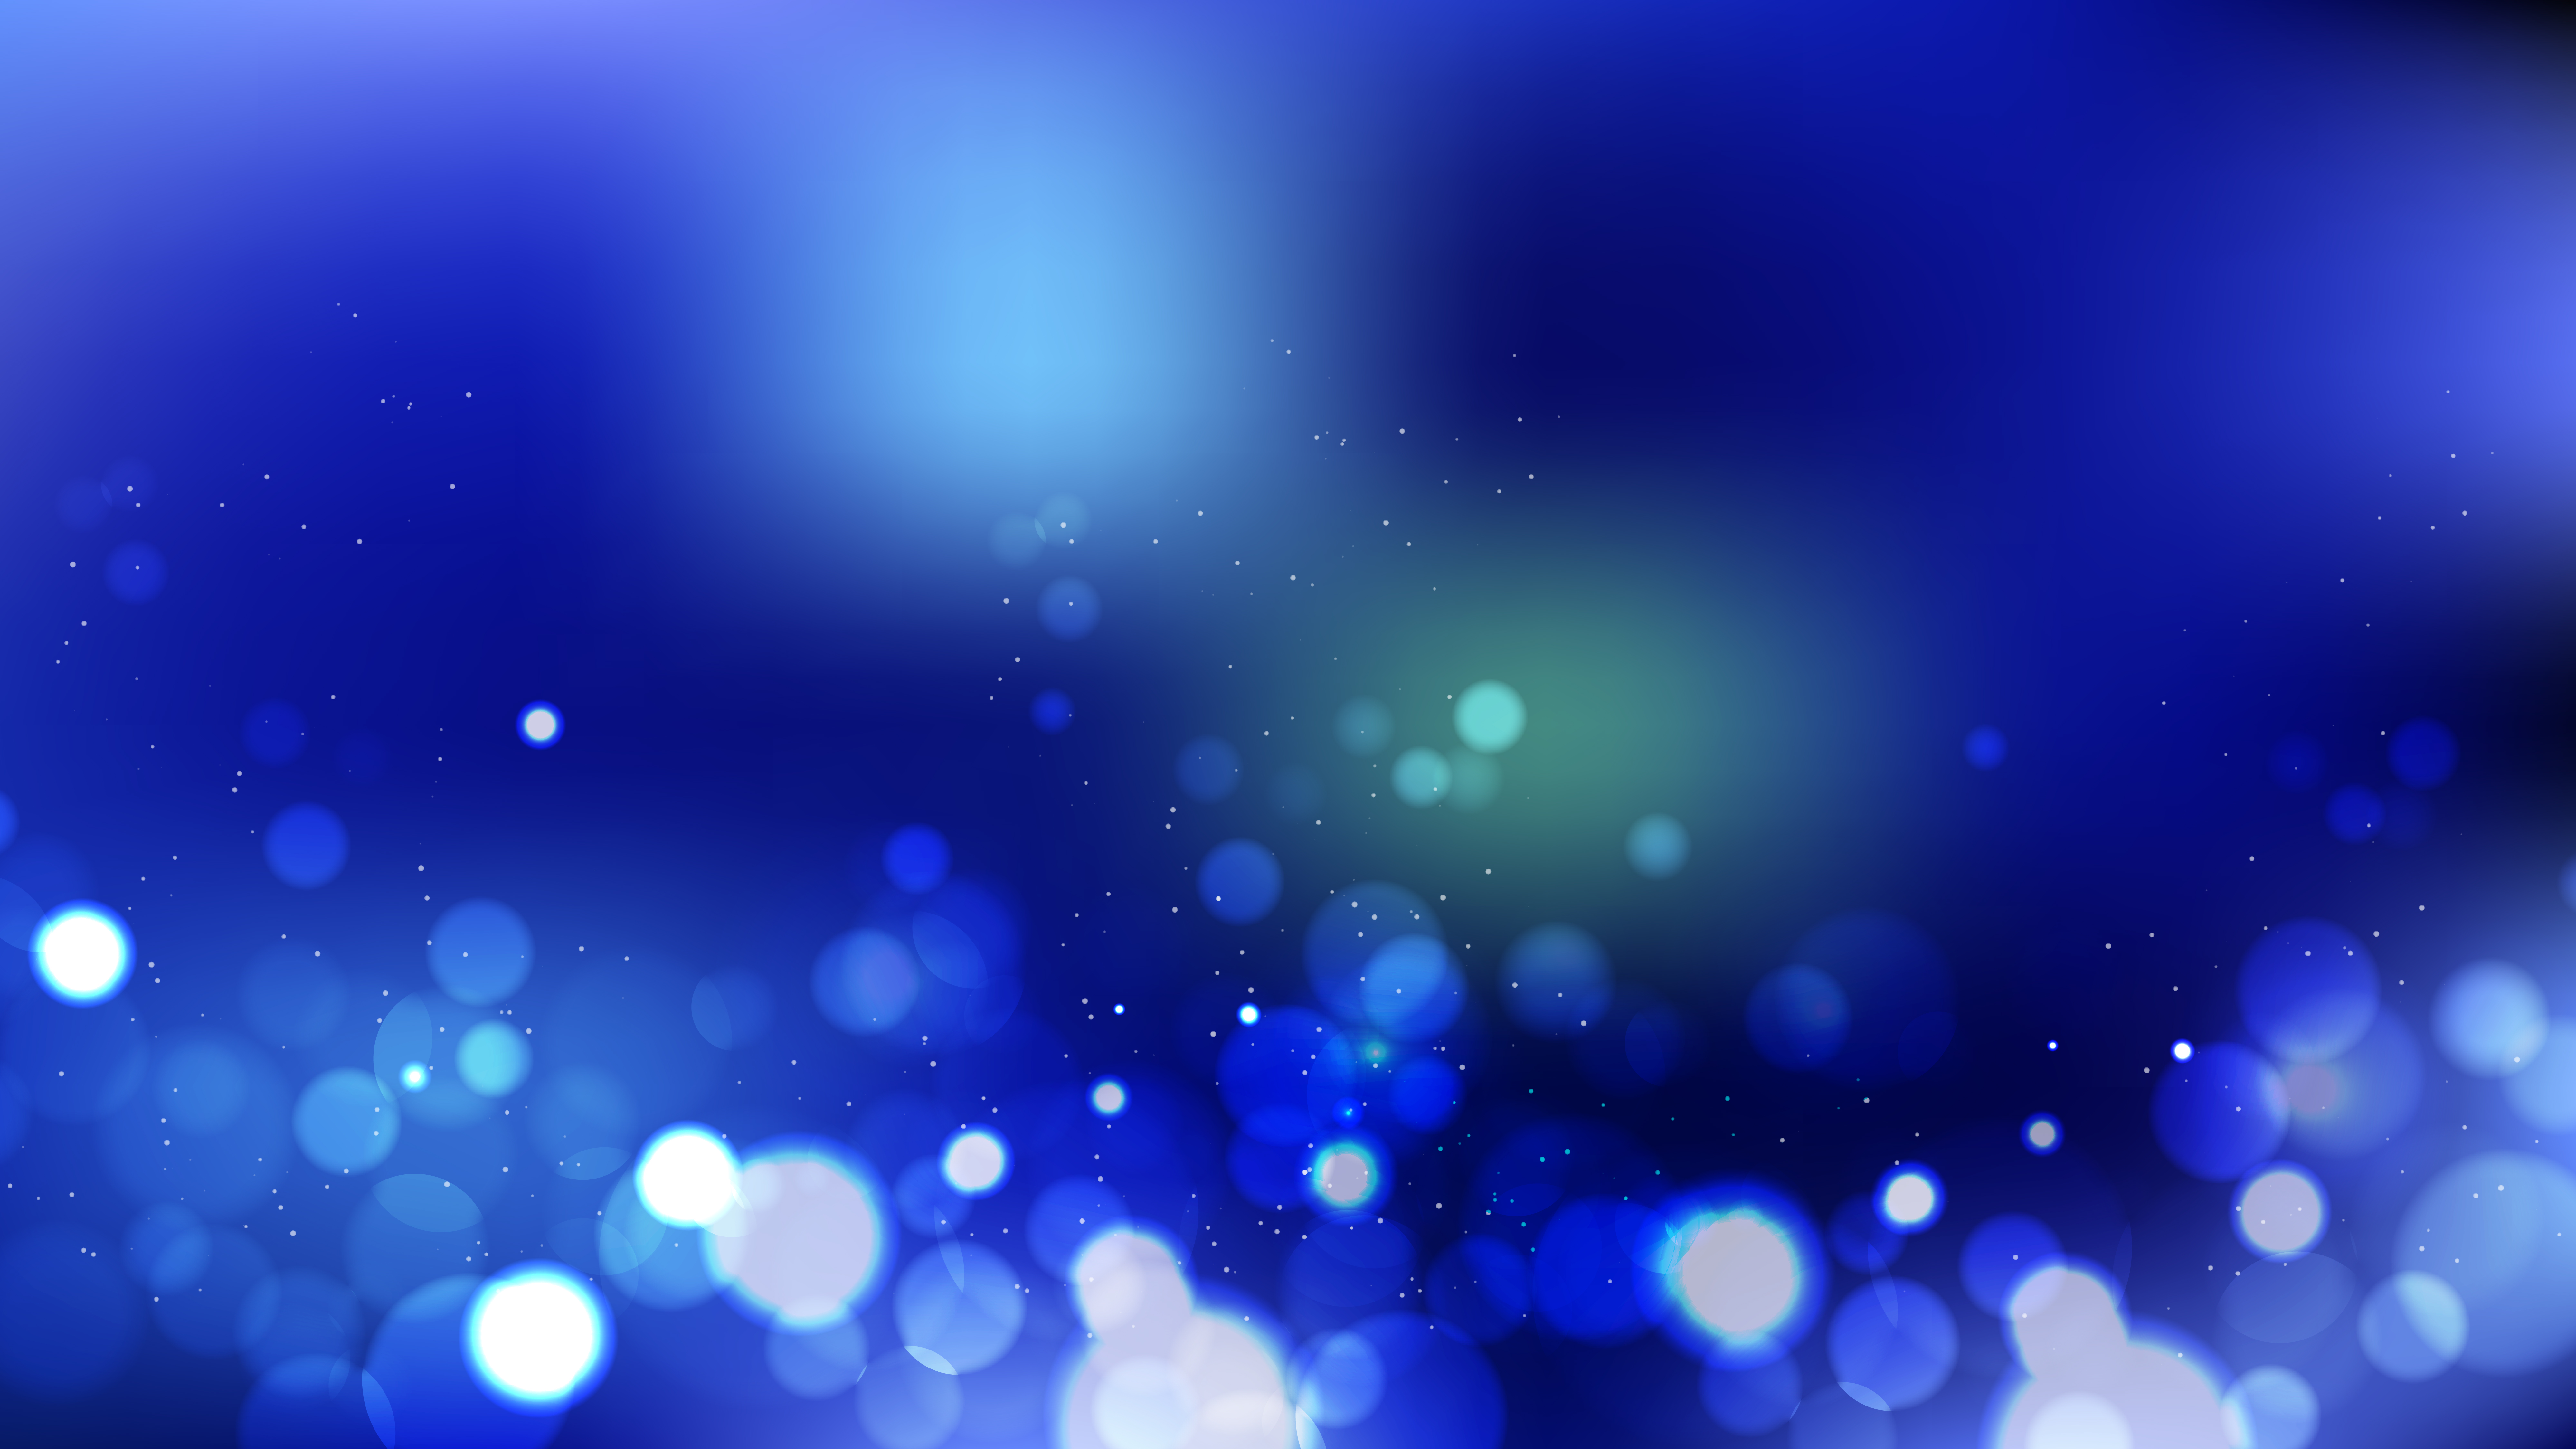 Free Dark Blue Blur Lights Background Vector